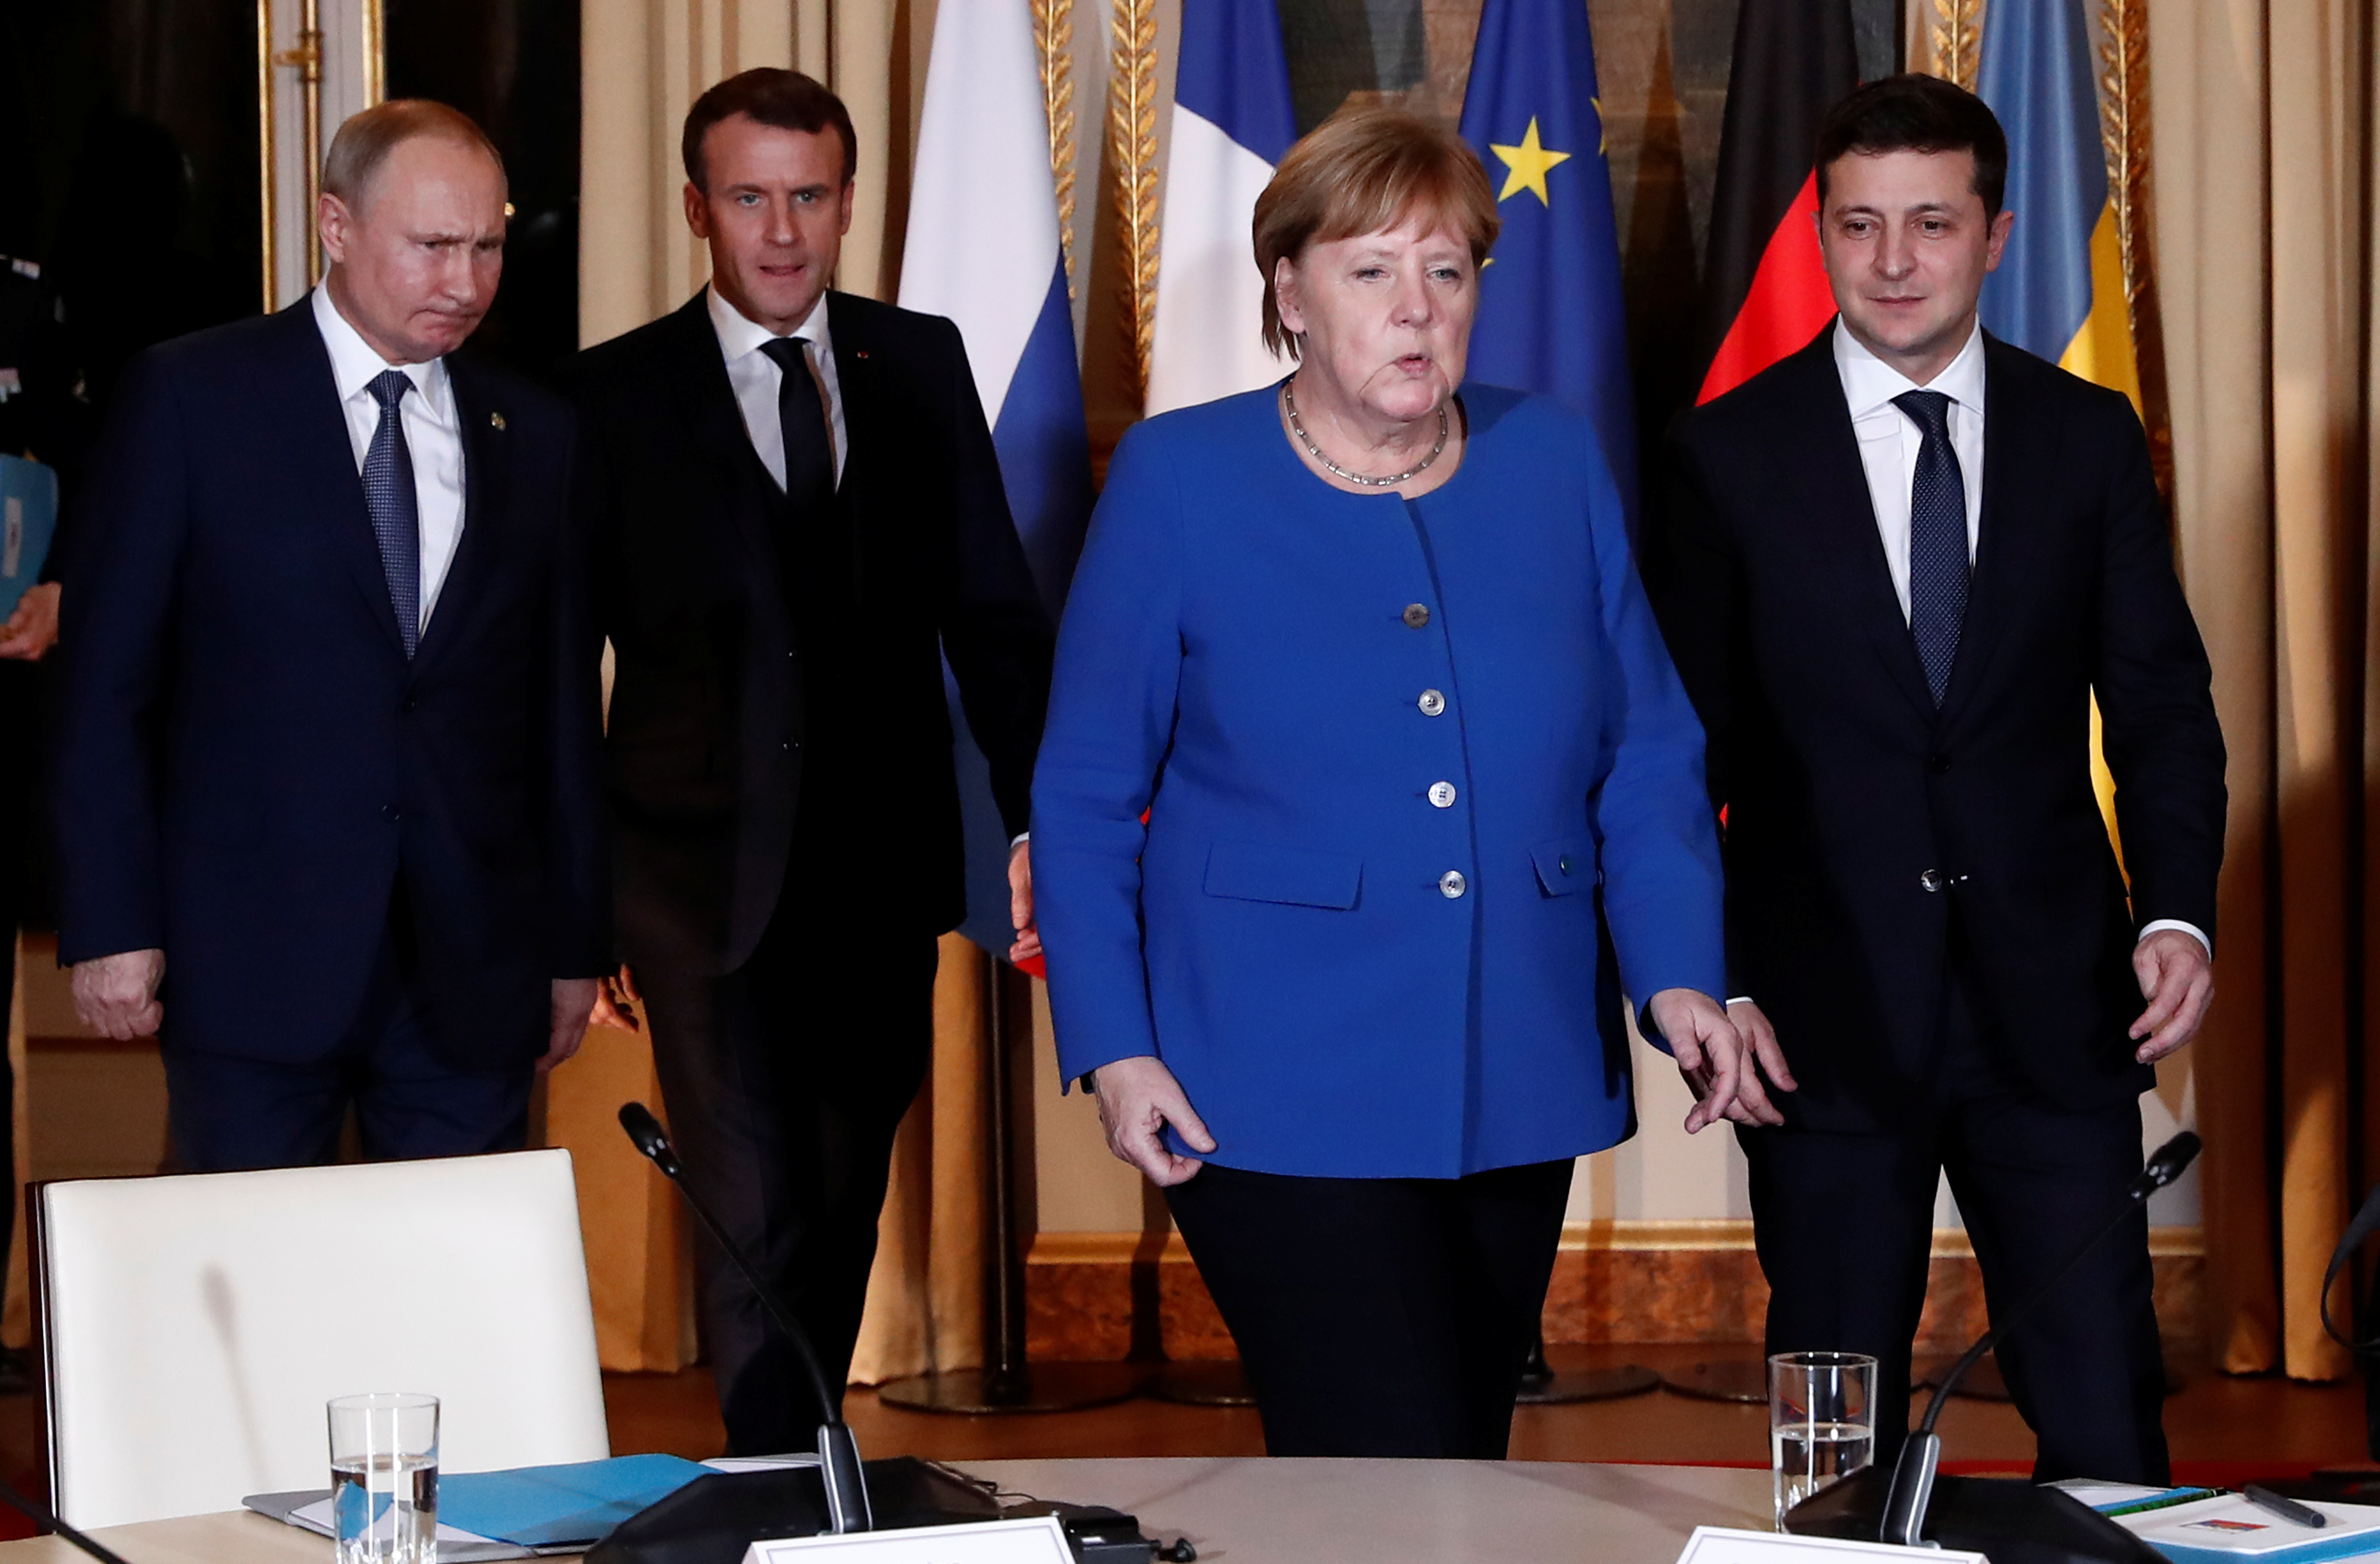 Зеленський, Меркель, Макрон і Путін уперше сіли за один стіл Нормандський саміт